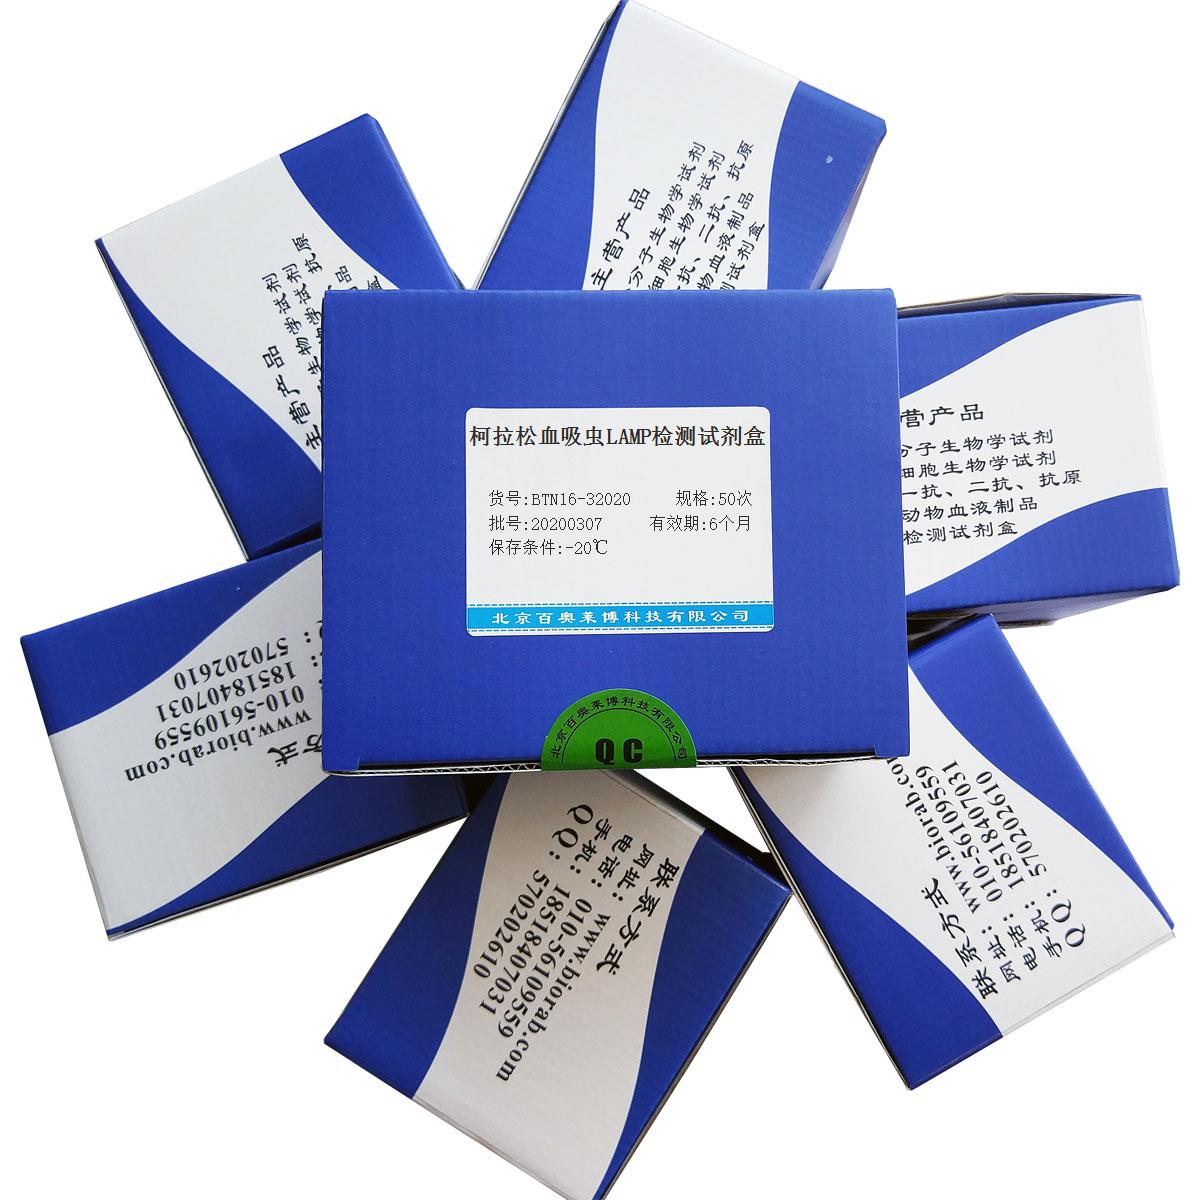 柯拉松血吸虫LAMP检测试剂盒北京品牌